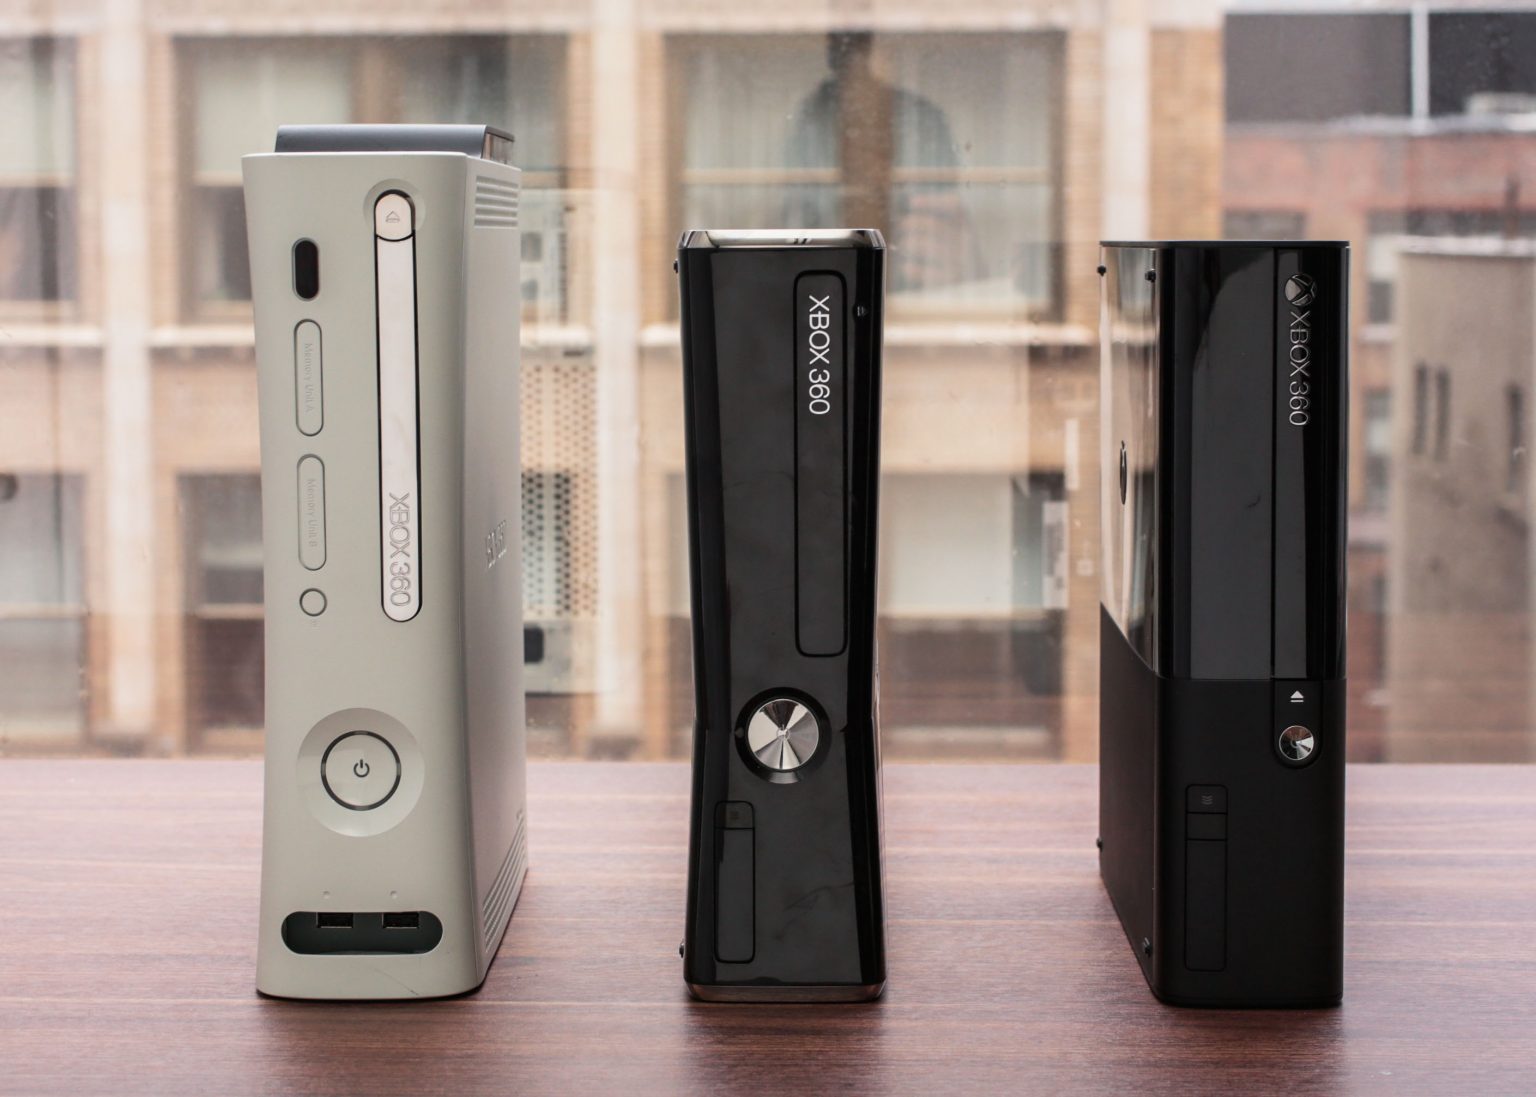 اشترِ Xbox 360 على لوحة الإعلانات: مجموعة من الألعاب الكلاسيكية